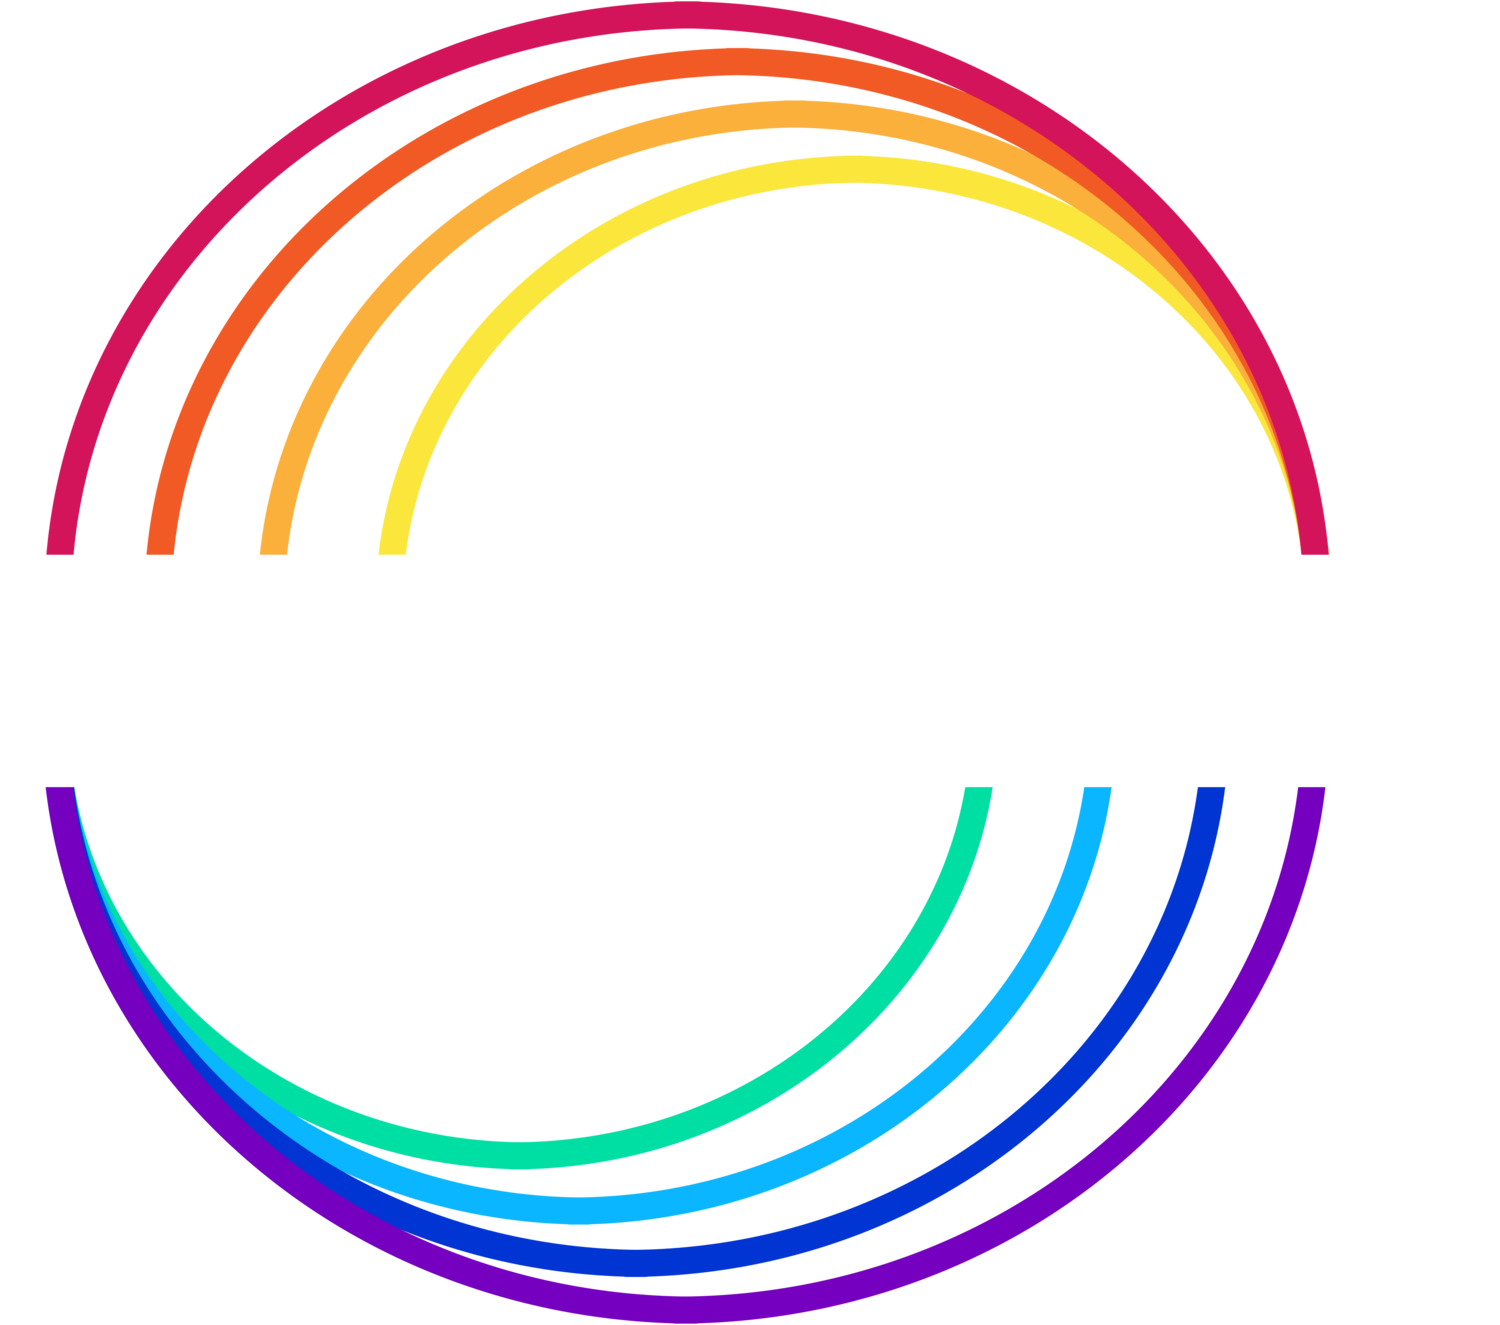 The Neurodevelopment Clinic